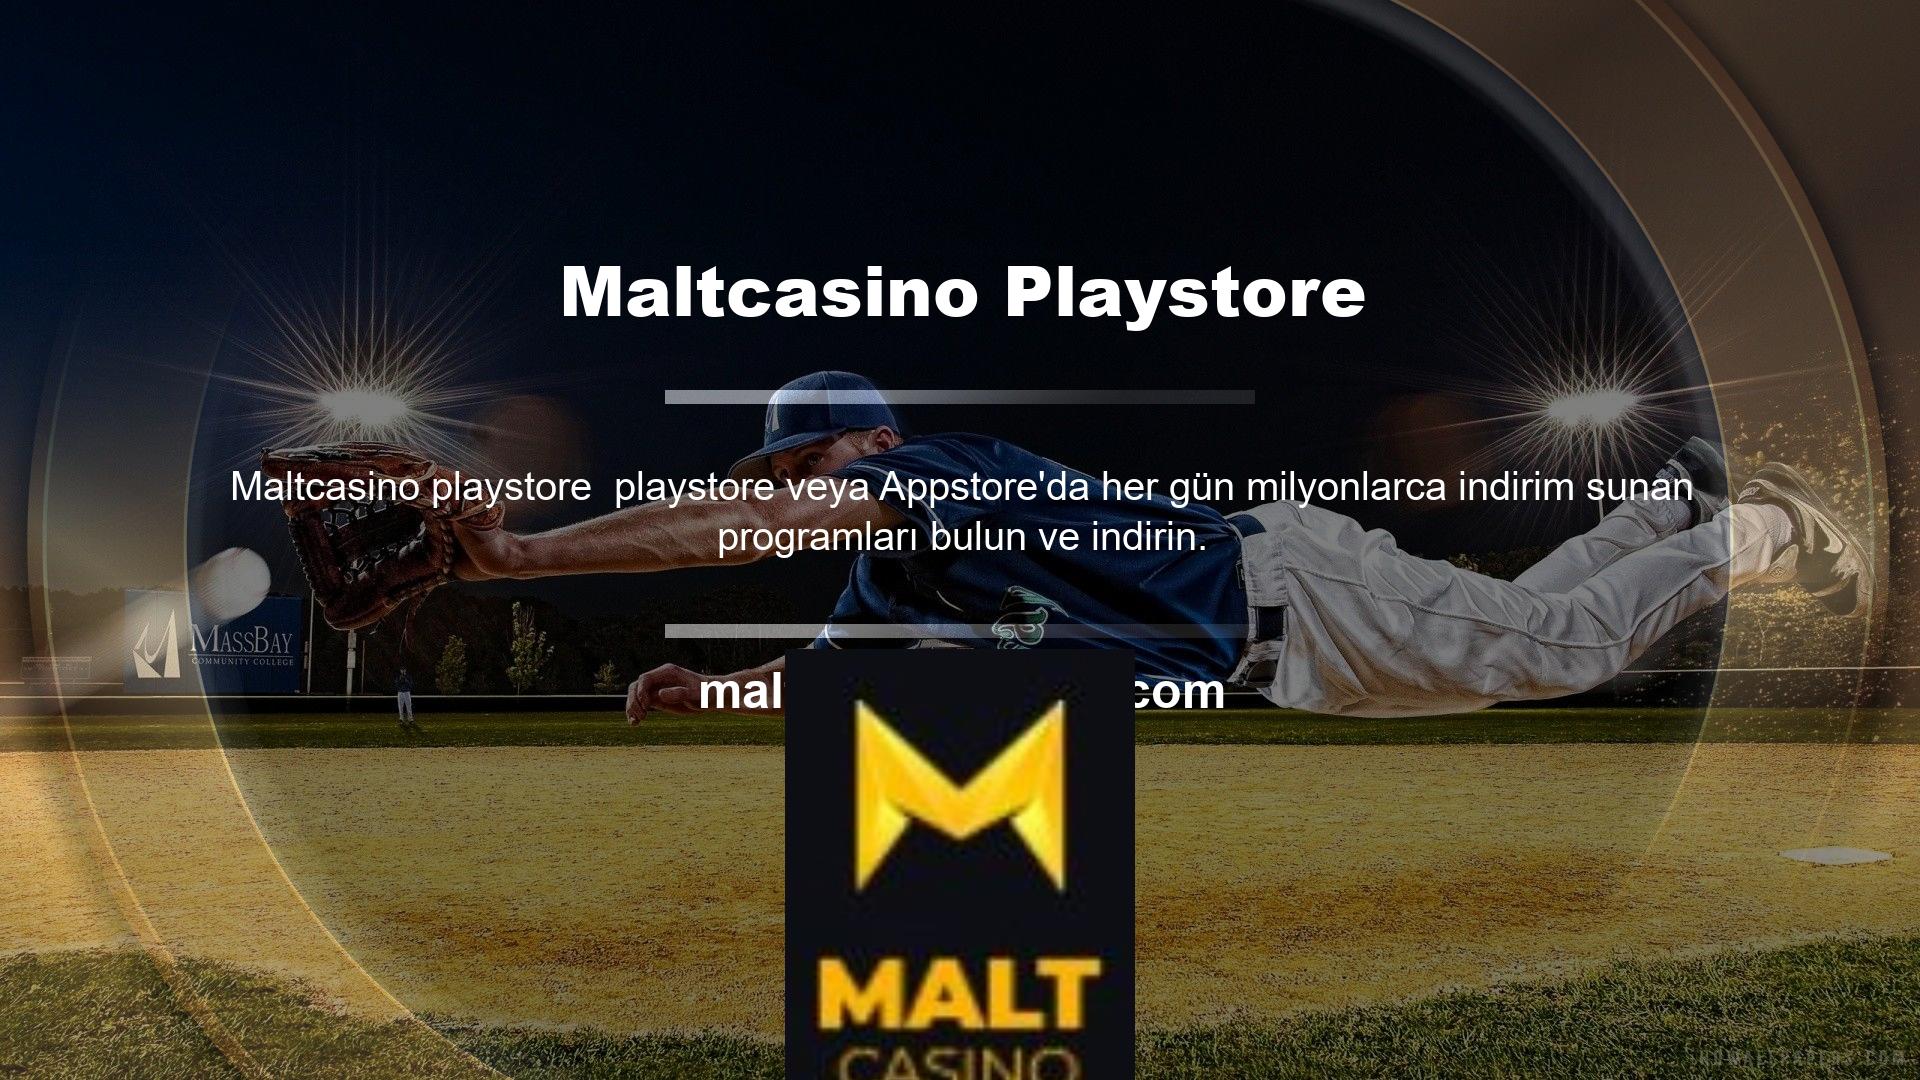 Program içeriği Maltcasino Casino web sitesindeki reklamları içerebilir